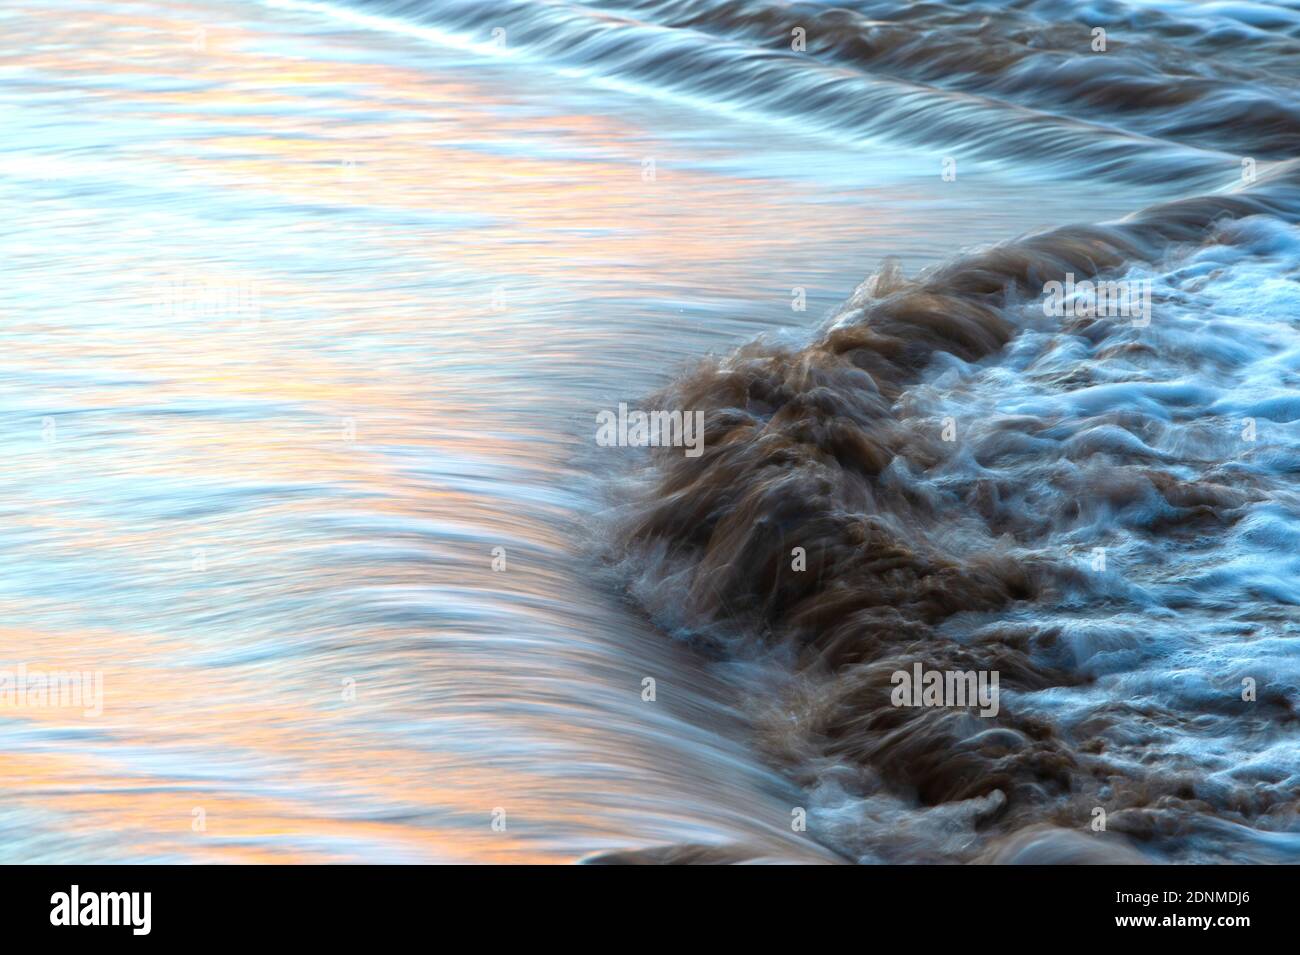 La marée se déverse sur les échalotes d'une plage au crépuscule, reflétant les couleurs du coucher de soleil dans l'eau en mouvement rapide. Banque D'Images